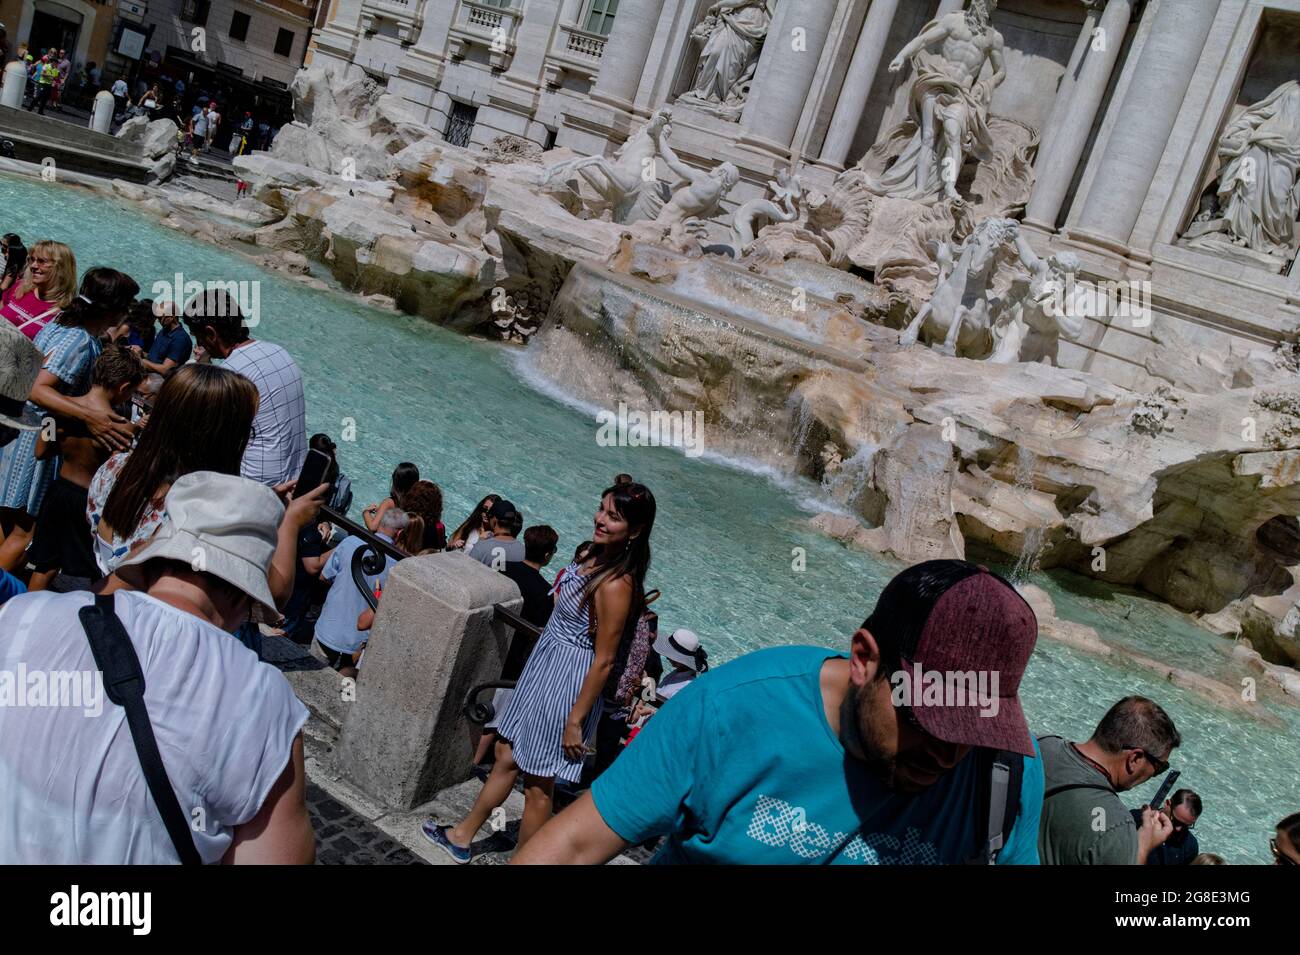 Europe - Italie, capitale Rome: Une vue détaillée de la fontaine de Trevi qui est l'un des endroits les plus populaires de Rome, des milliers de personnes visitent le f Banque D'Images